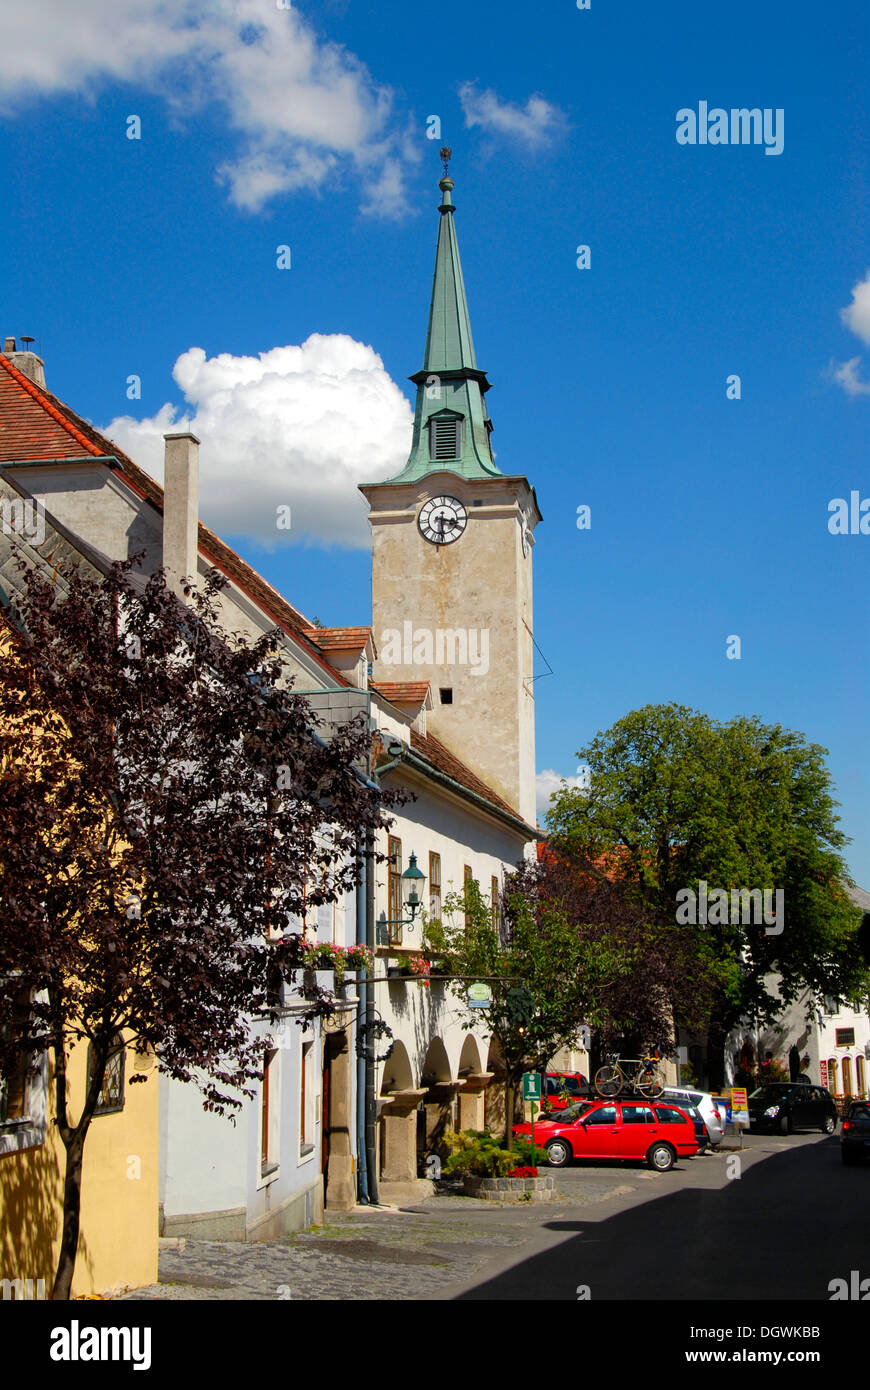 Rue avec tour de l'hôtel de ville, village viticole Gumpoldskirchen, Basse Autriche, Autriche, Europe Banque D'Images